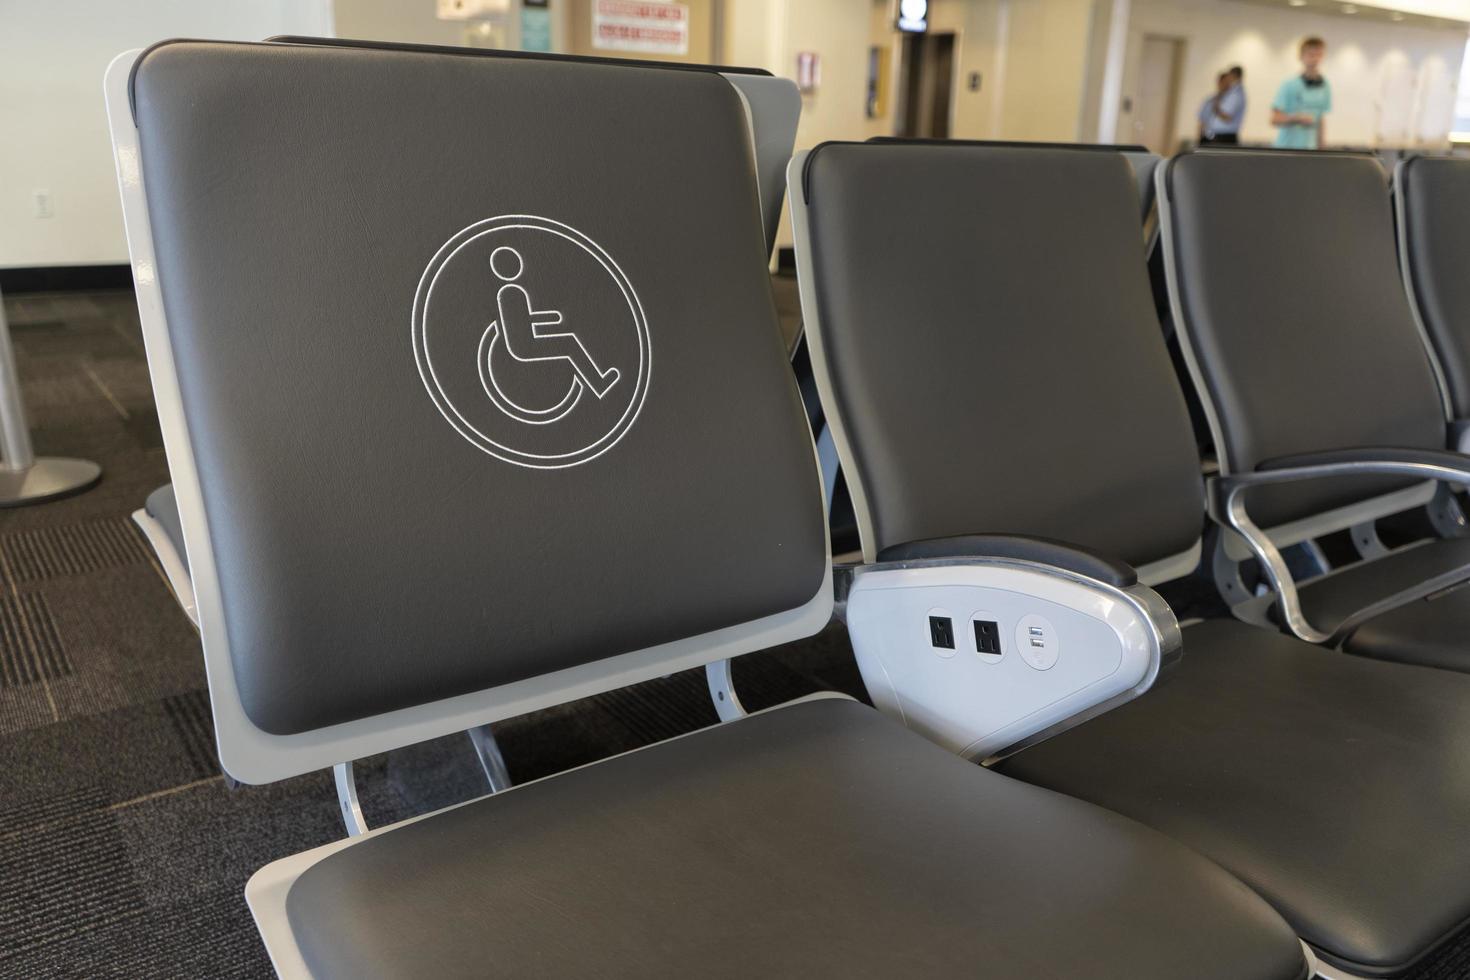 Behindertensitz auf einem Flughafen foto